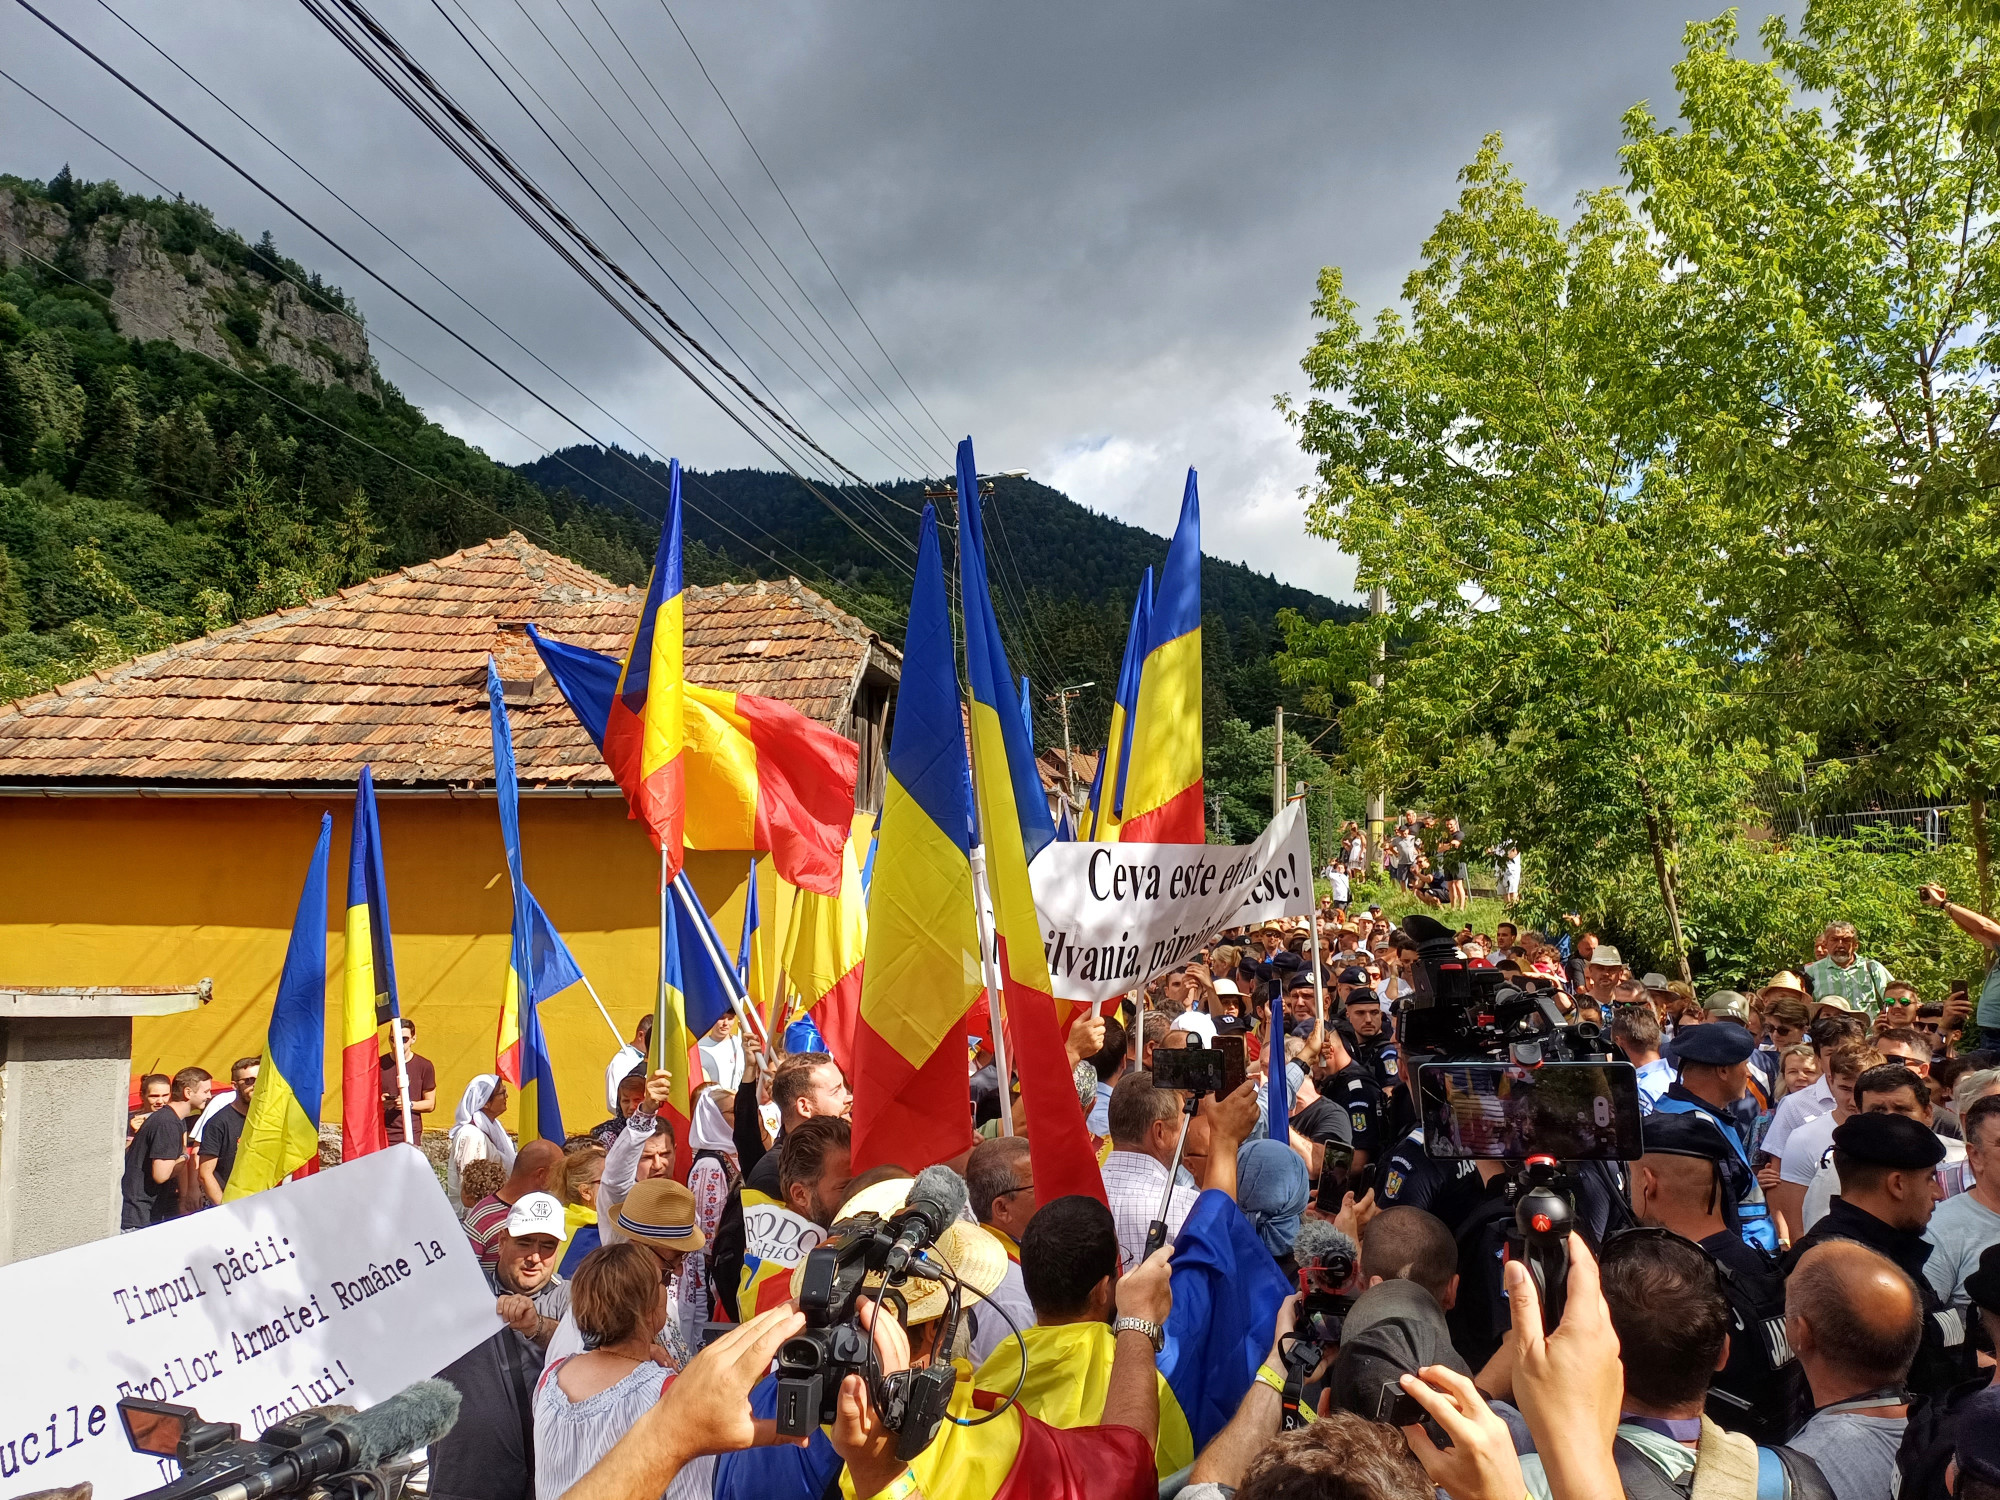 Román nacionalisták fogadták Orbánt Tusnádfürdőn